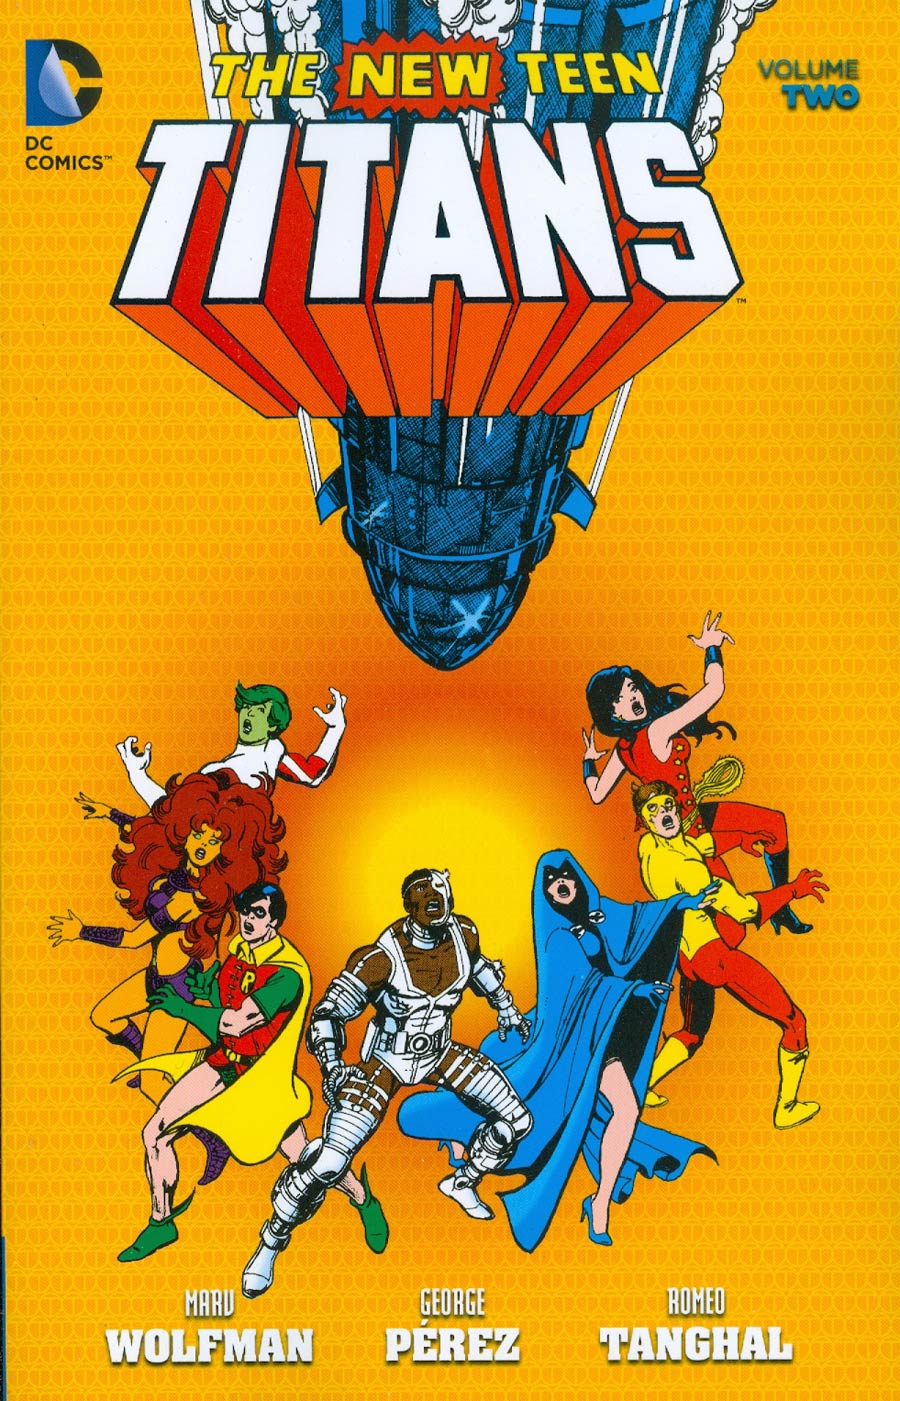 New Teen Titans Vol 2 TP